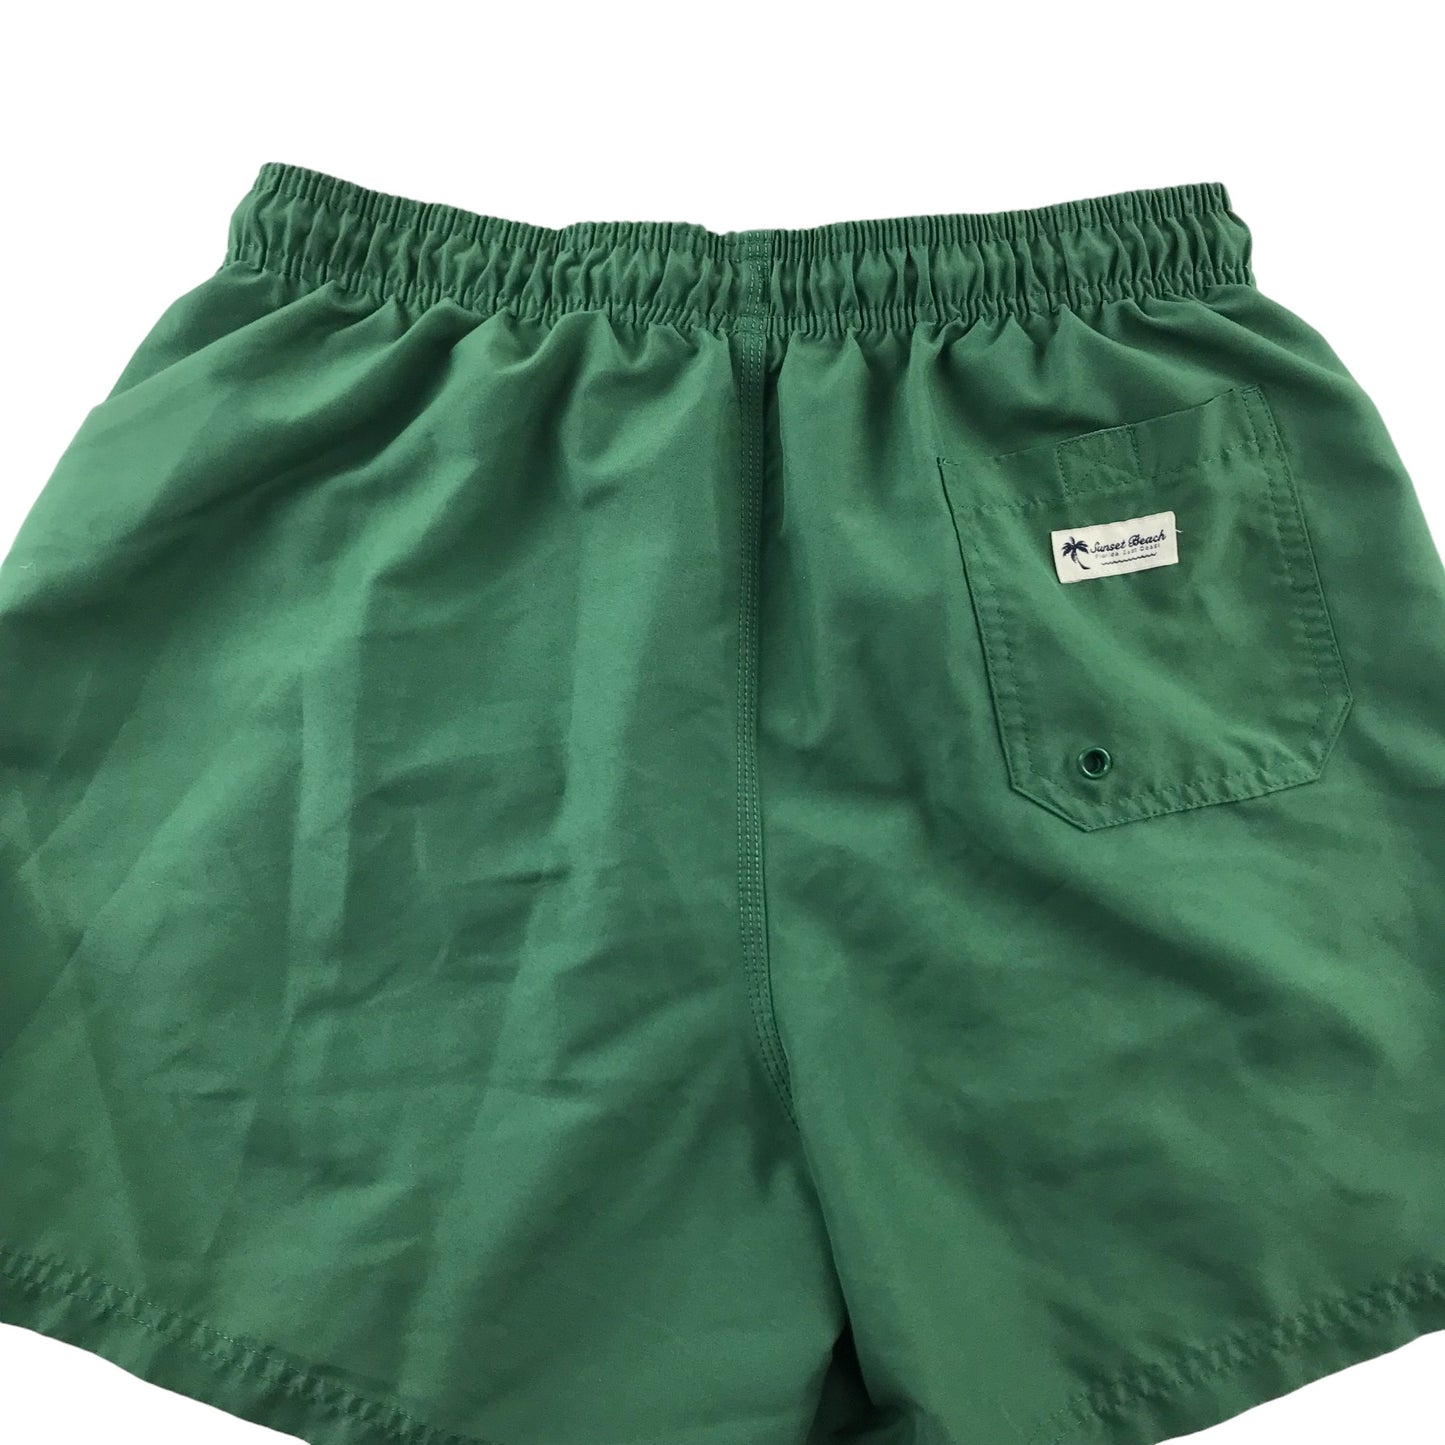 F&F Swim Trunks Size Men M Green Plain Shorts